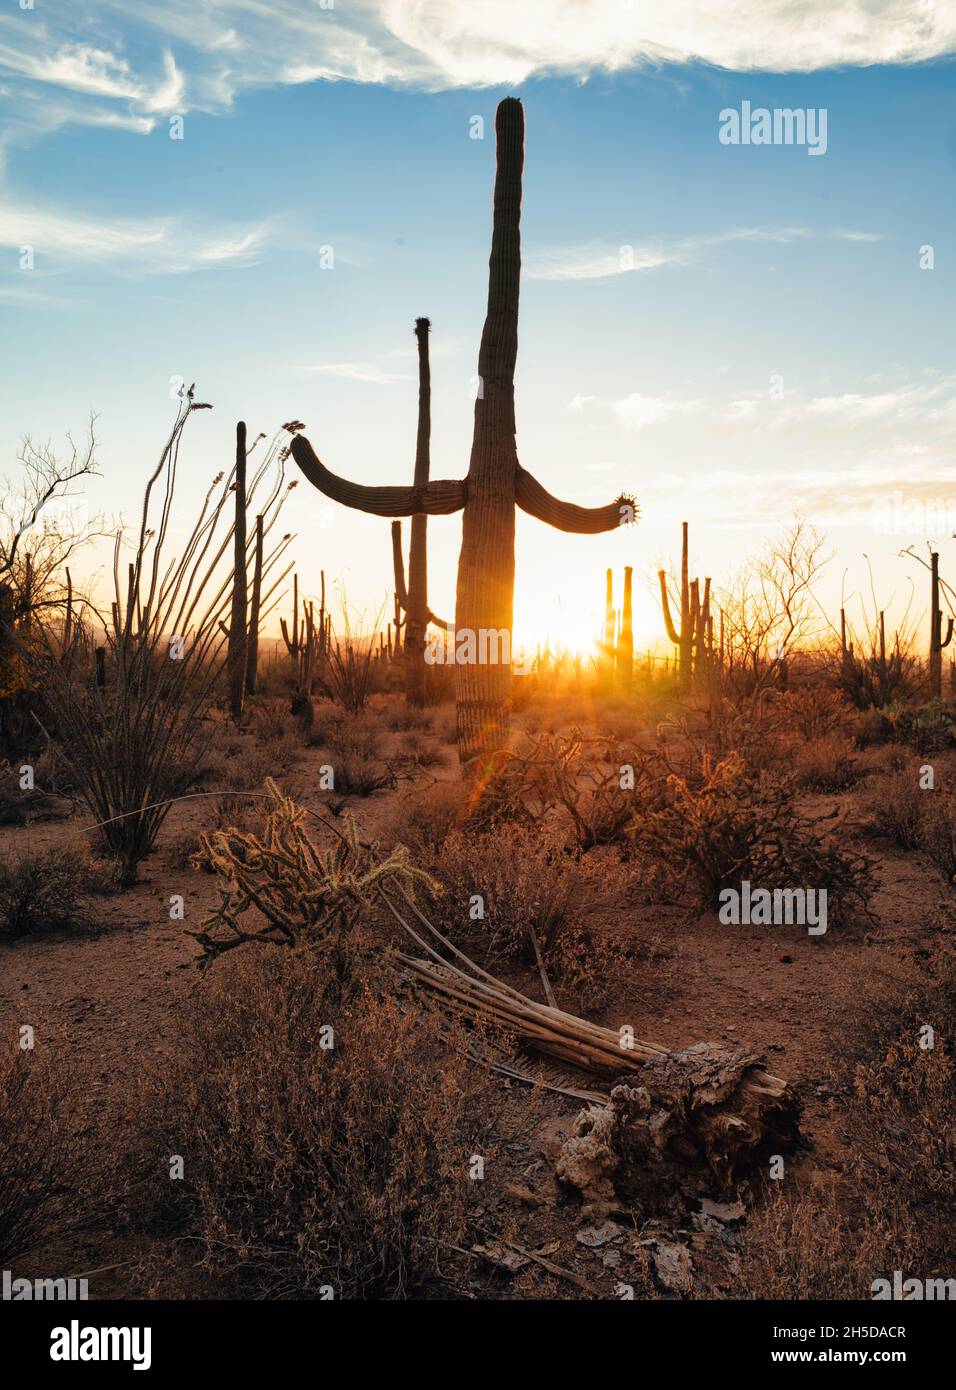 Toter saguaro vor lebenden Menschen bei Sonnenuntergang in der Wüste von Arizona Stockfoto